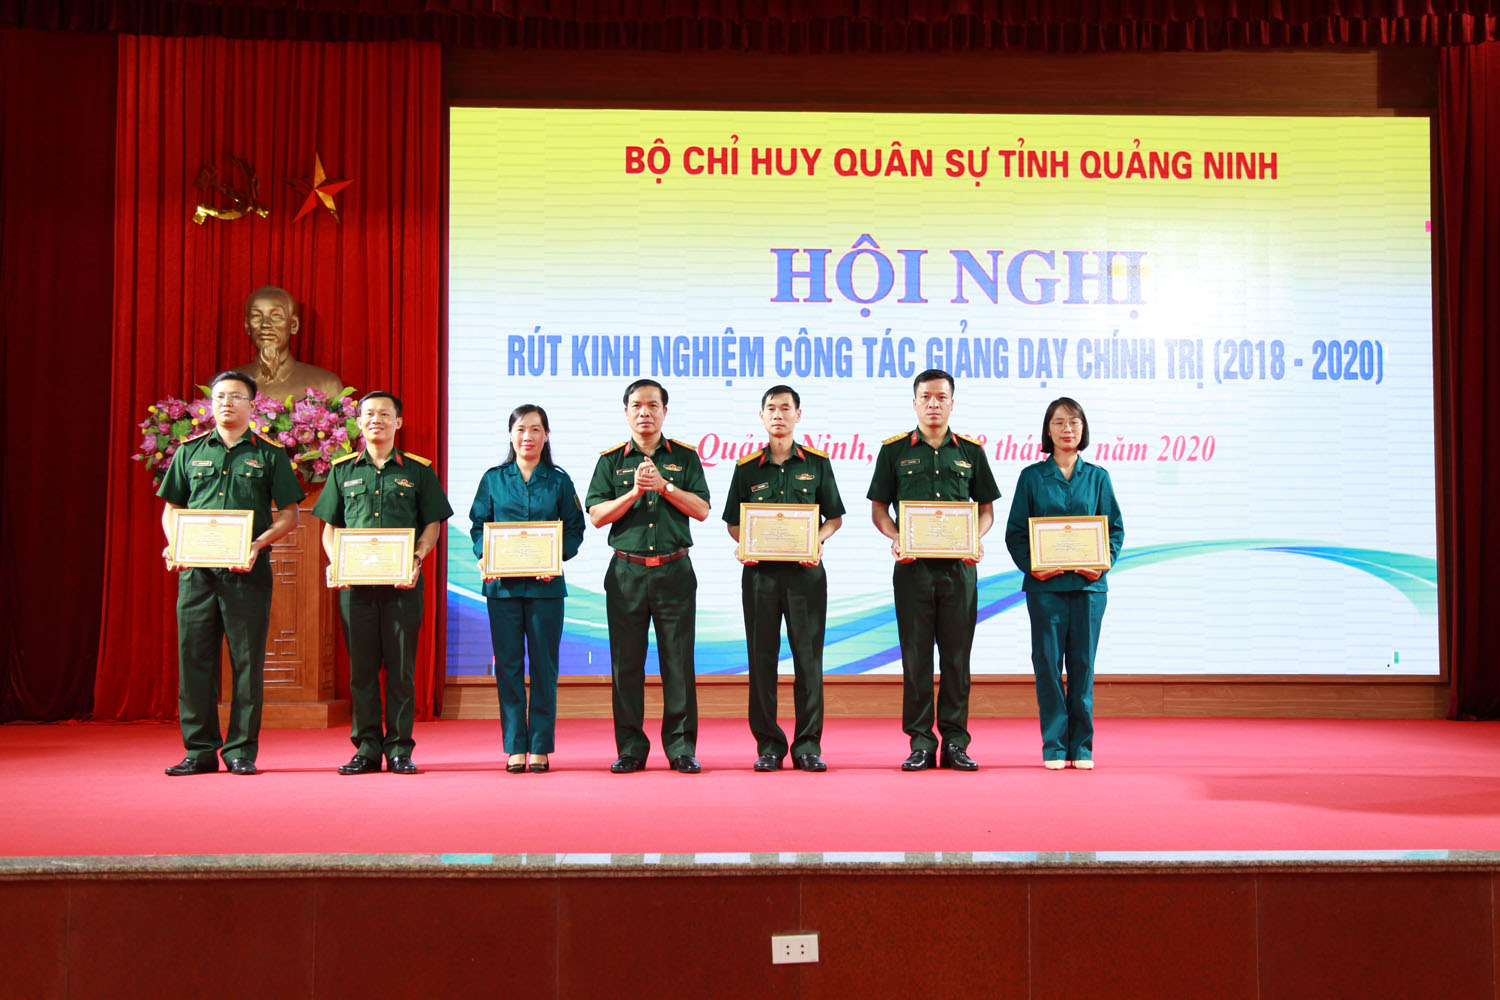 Đại tá Nguyễn Quang Hiến, Chính ủy Bộ CHQS tỉnh trao thưởng cho các cá nhân đoạt Nhất, Nhì, Ba hội thi “ Cán bộ giảng dạy chính trị năm 2020 ”.